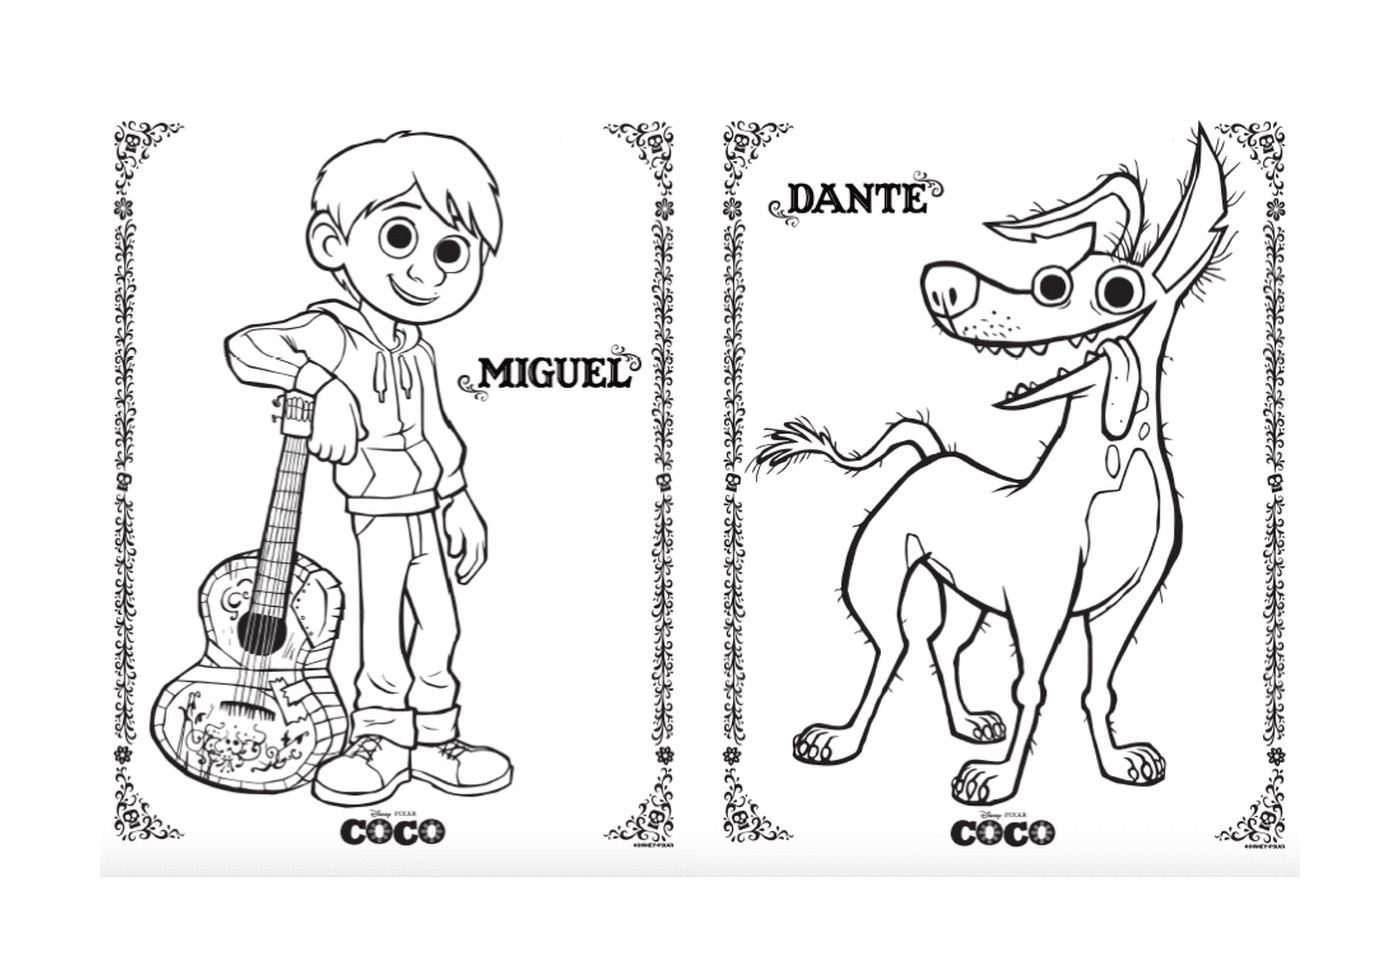  Miguel y Dante el perro, en Disney Coco Pixar 